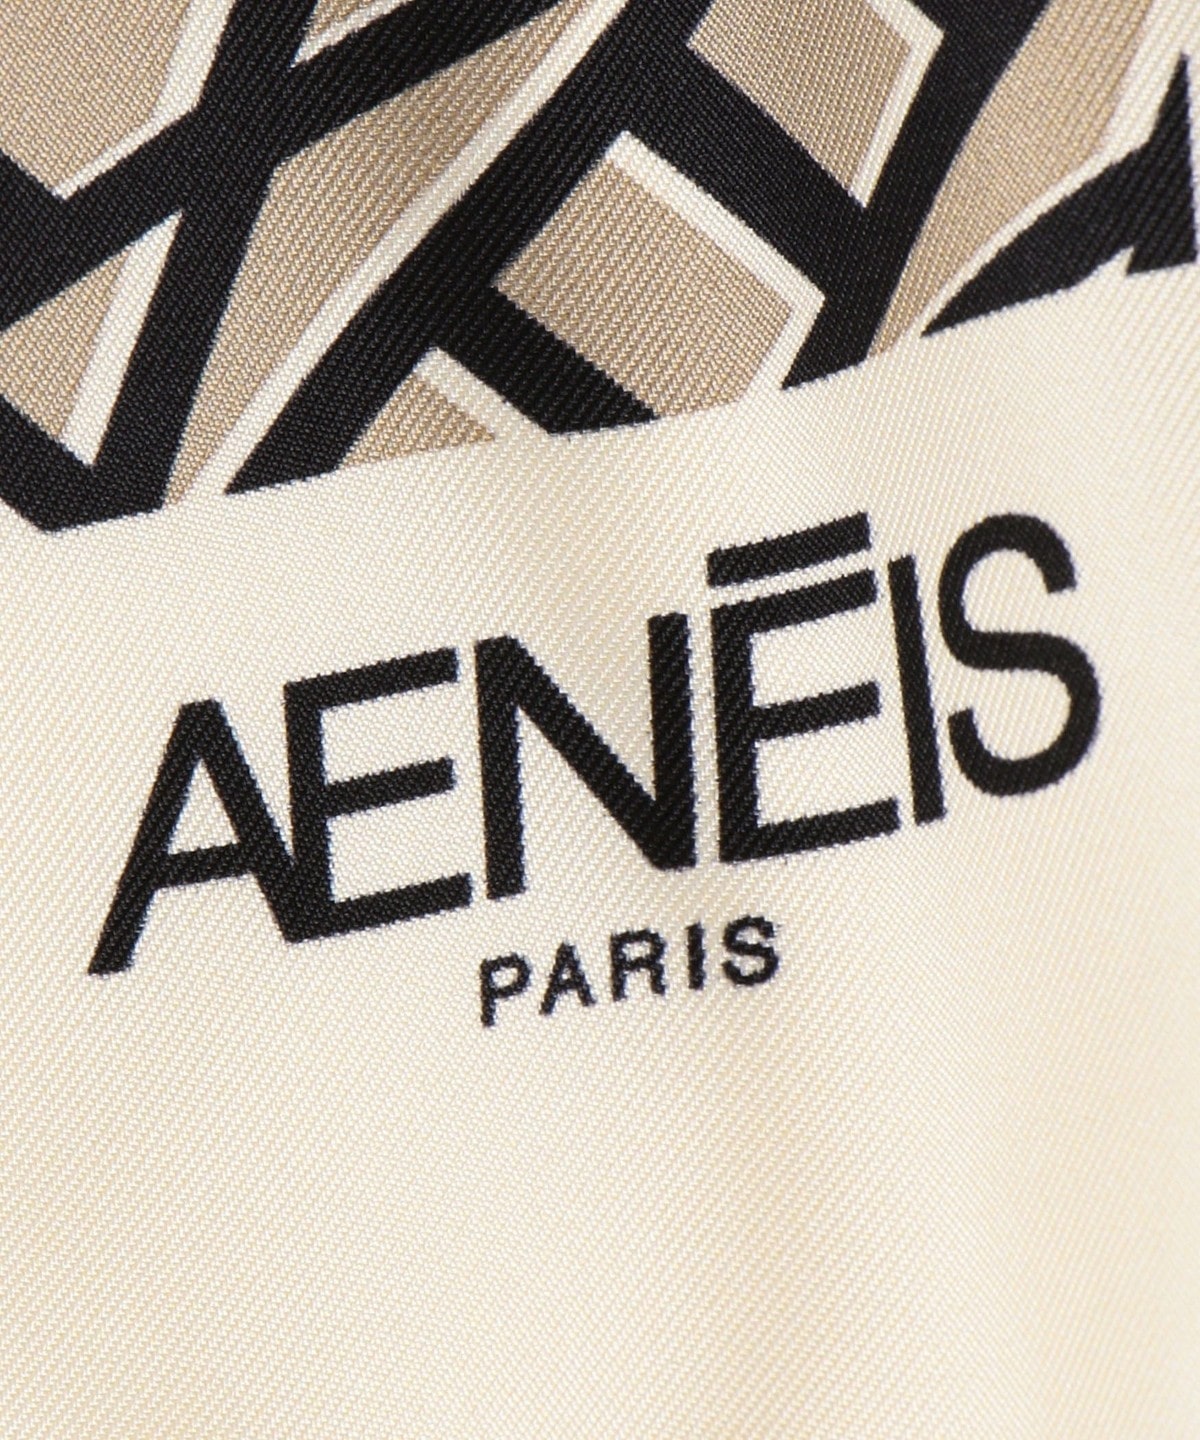 AENEIS:モノグラムプリントスカーフ: ストール/マフラー/スカーフ 